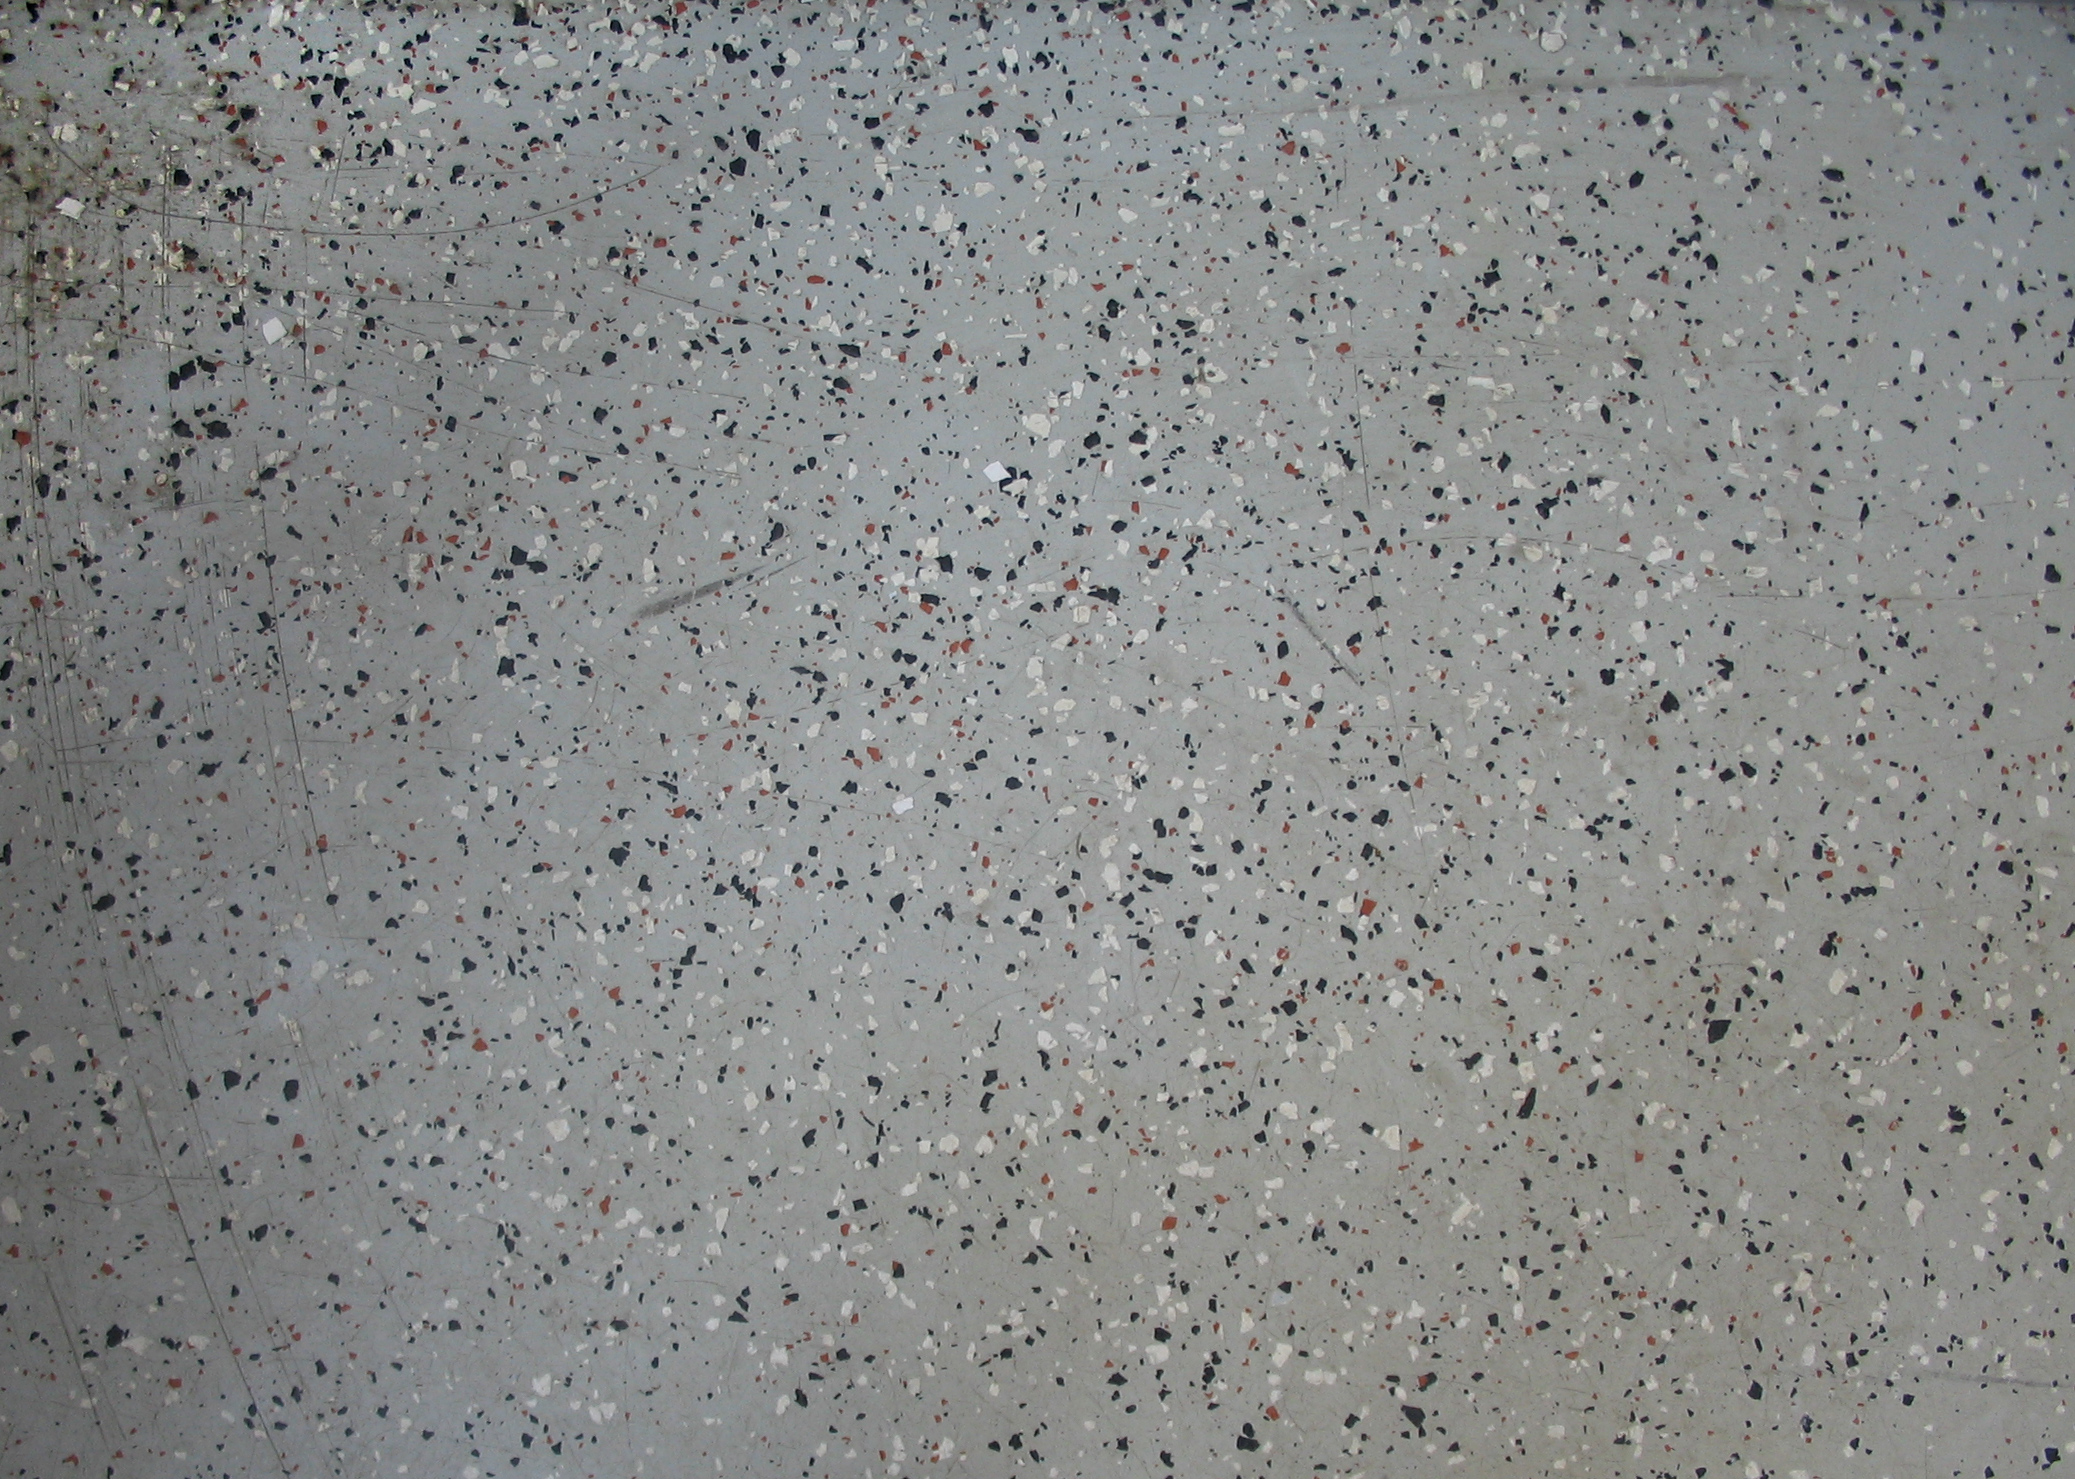 Stone surface I by baikal-stock on DeviantArt